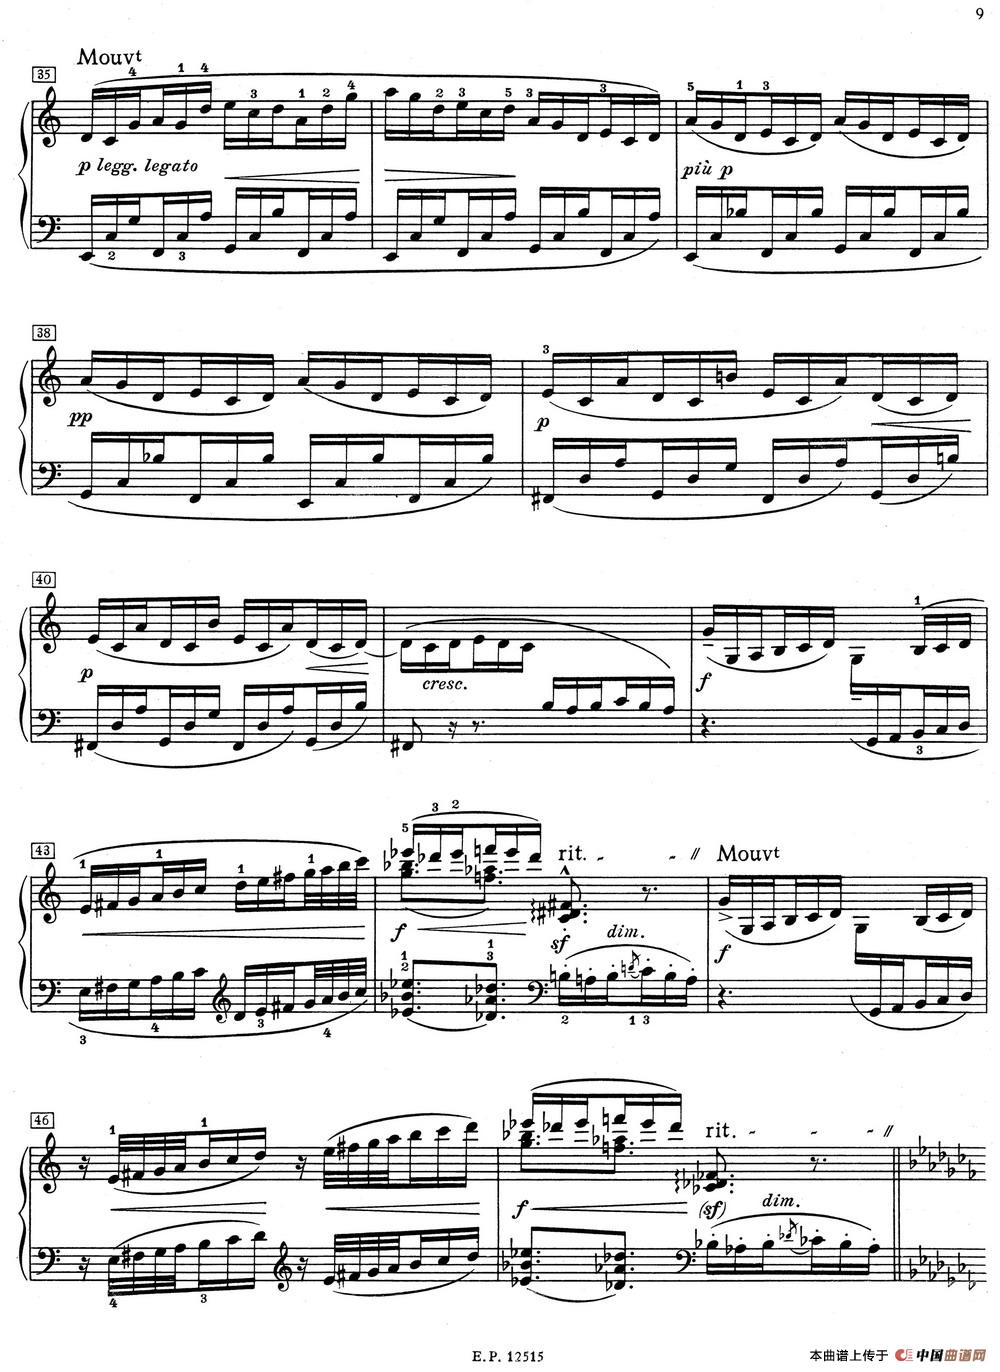 德彪西12首钢琴练习曲（1 五指练习v1.0 cinq doigts）(1)_1 Pour les cinq doigts_页面_3.jpg